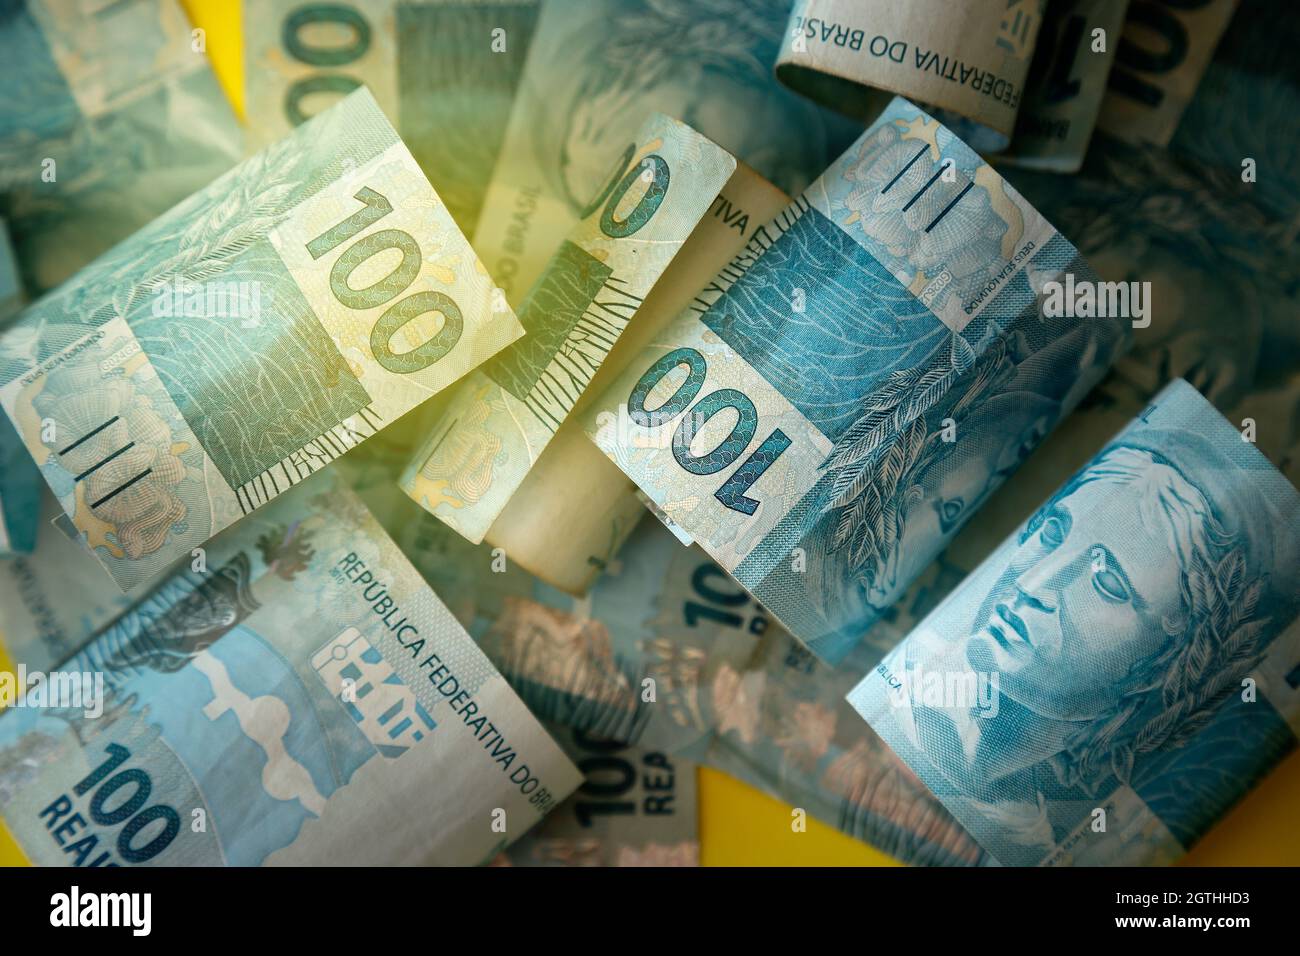 Argent brésilien empilé - détail en cents reais factures - concept argent brésilien Banque D'Images